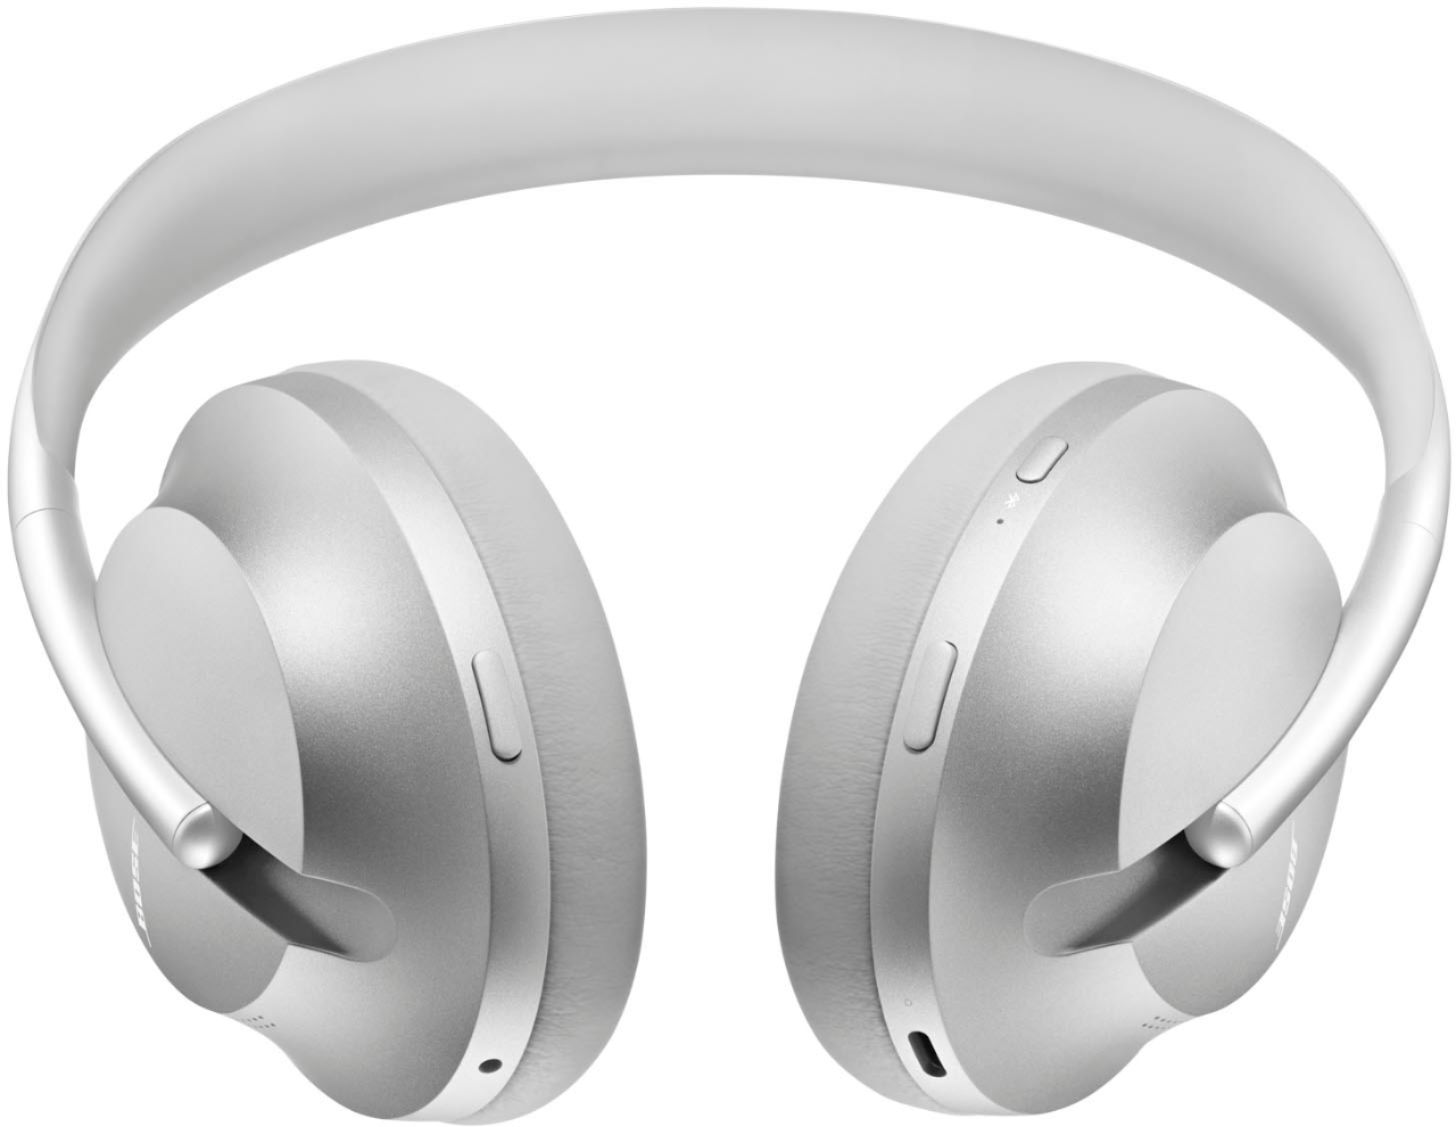 オーディオ機器 ヘッドフォン Bose Headphones 700 Wireless Noise Cancelling Over-the-Ear 